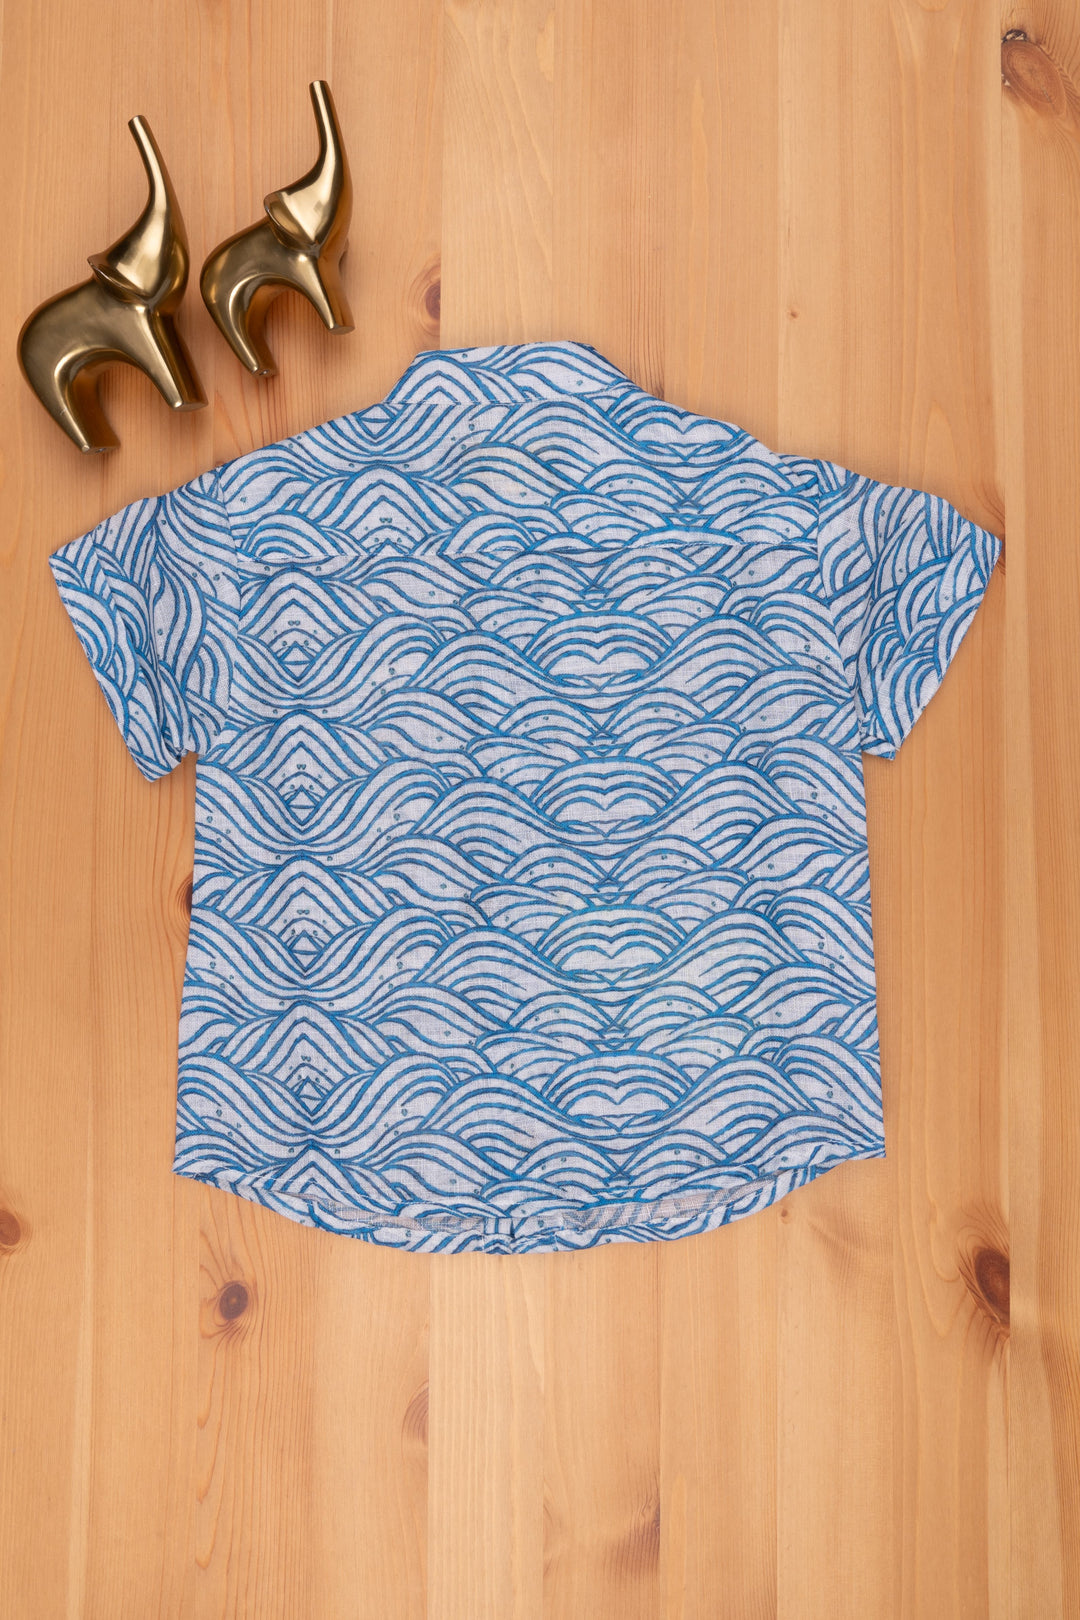 The Nesavu Boys Linen Shirt Oceanic Elegance: Boys Blue Linen Shirt with Wave-Inspired Patterns Nesavu Boys Linen Shirt | Kids Printed Shirt | The Nesavu